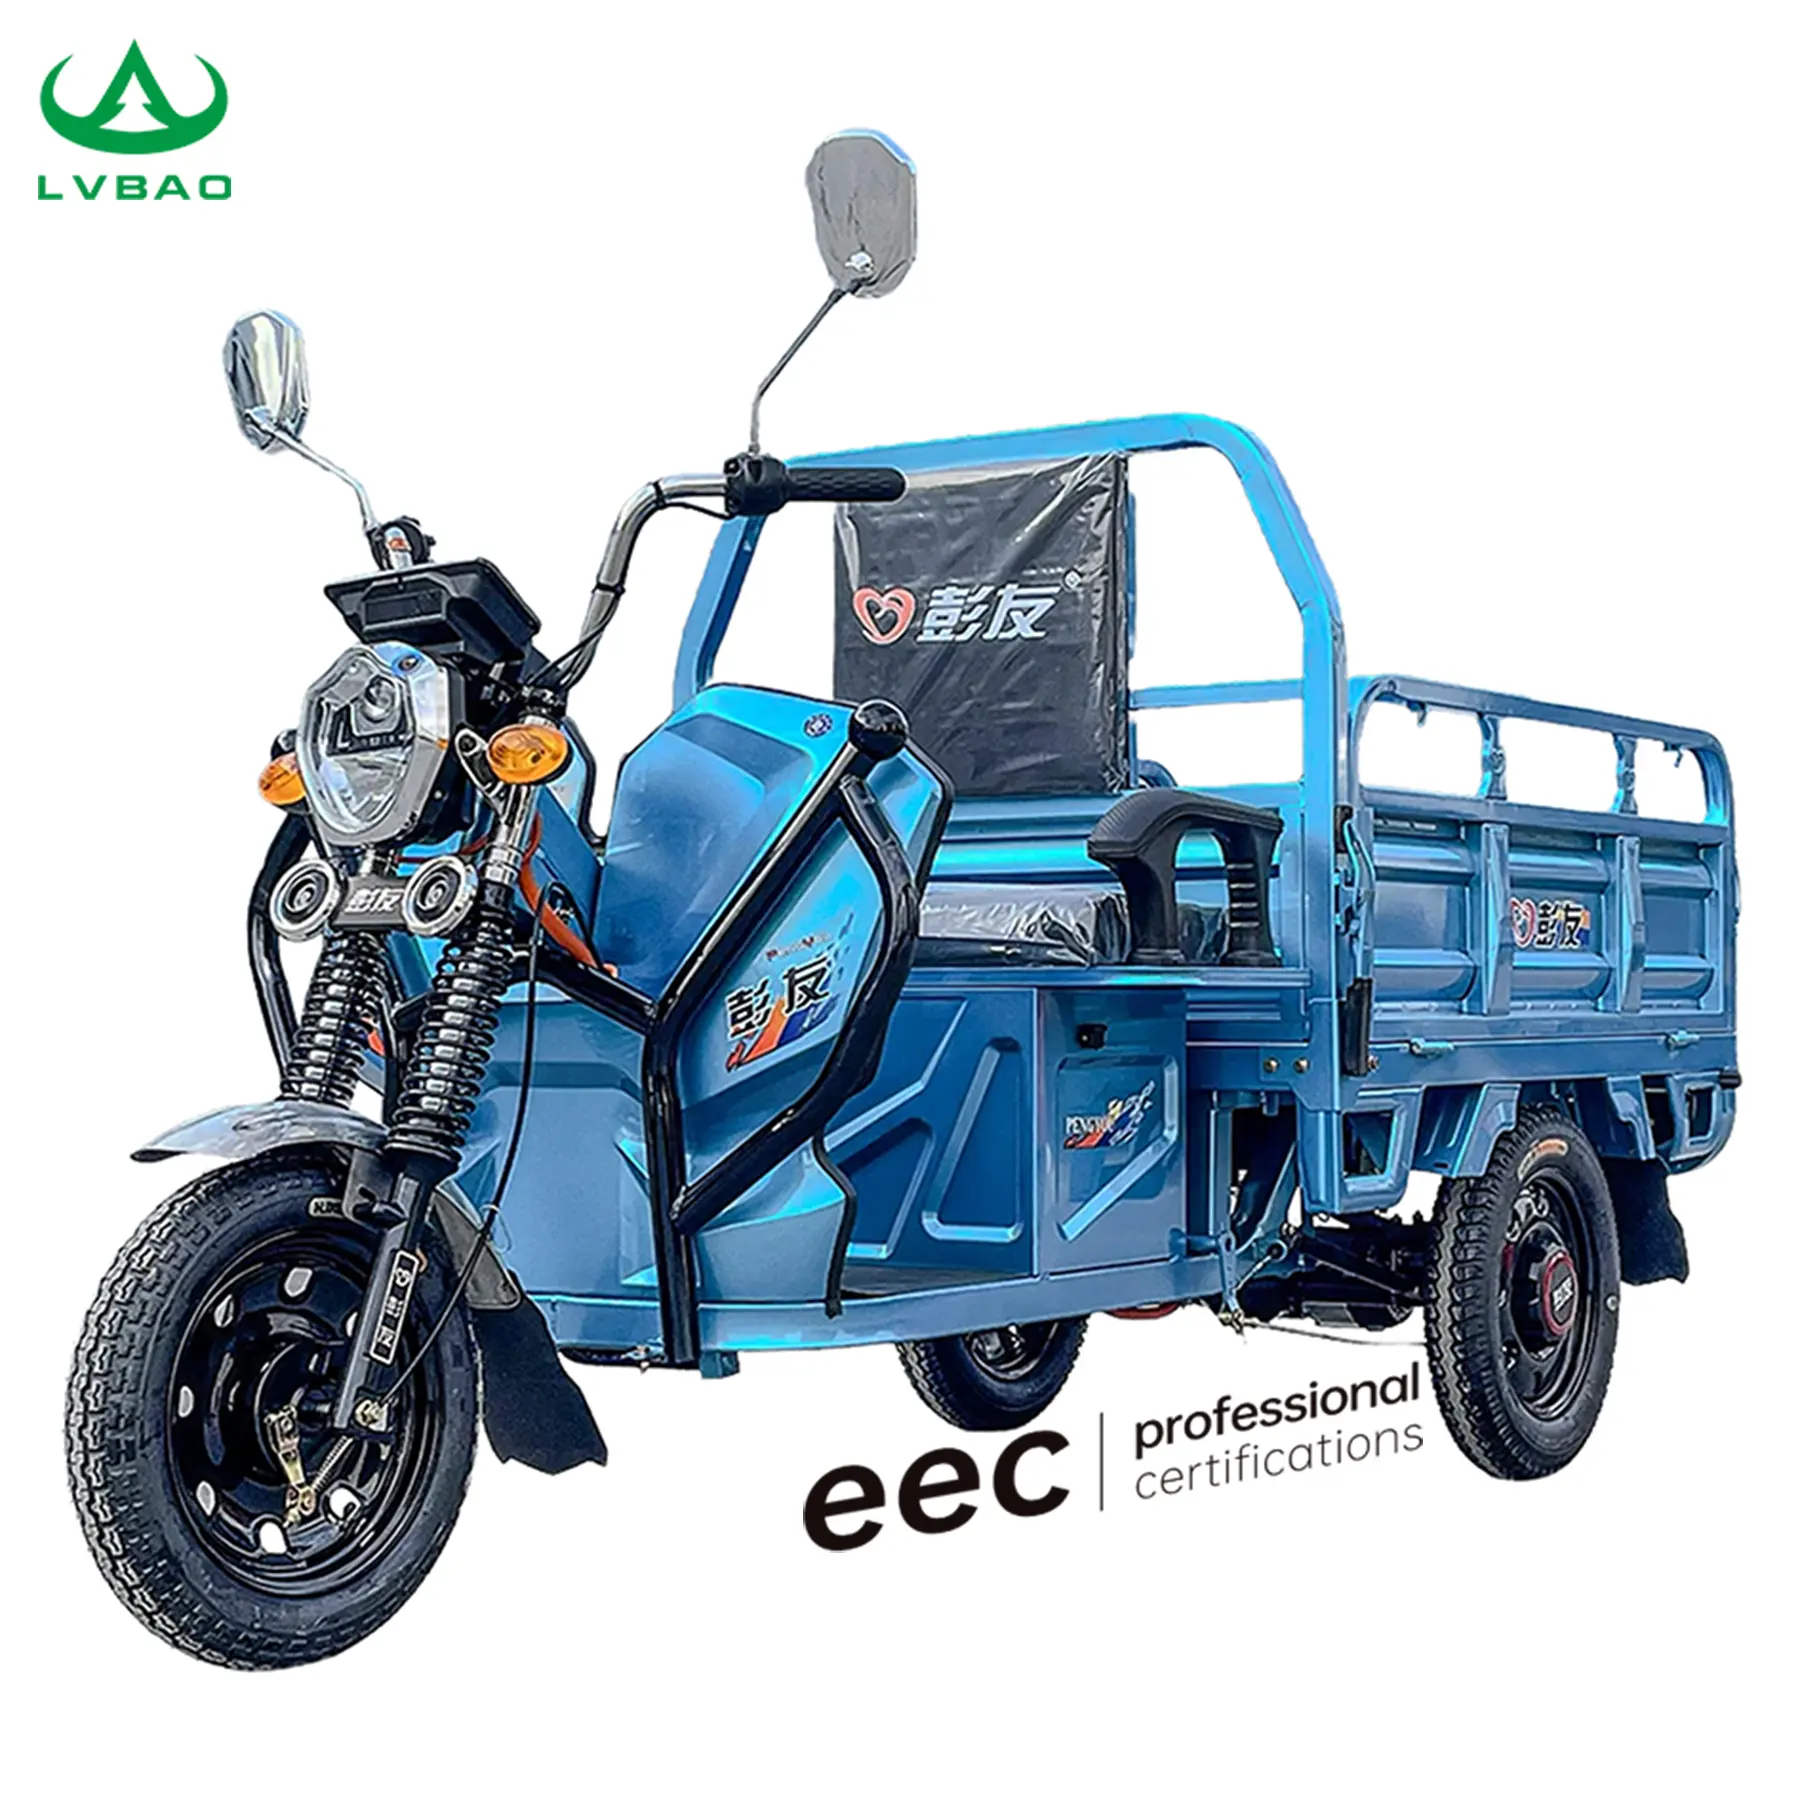 LB-LB130 Hochwertiges elektrisches Ladungsdreirad Dreirad Motorrad Dreirad EWG COC Europa Zulassung legal